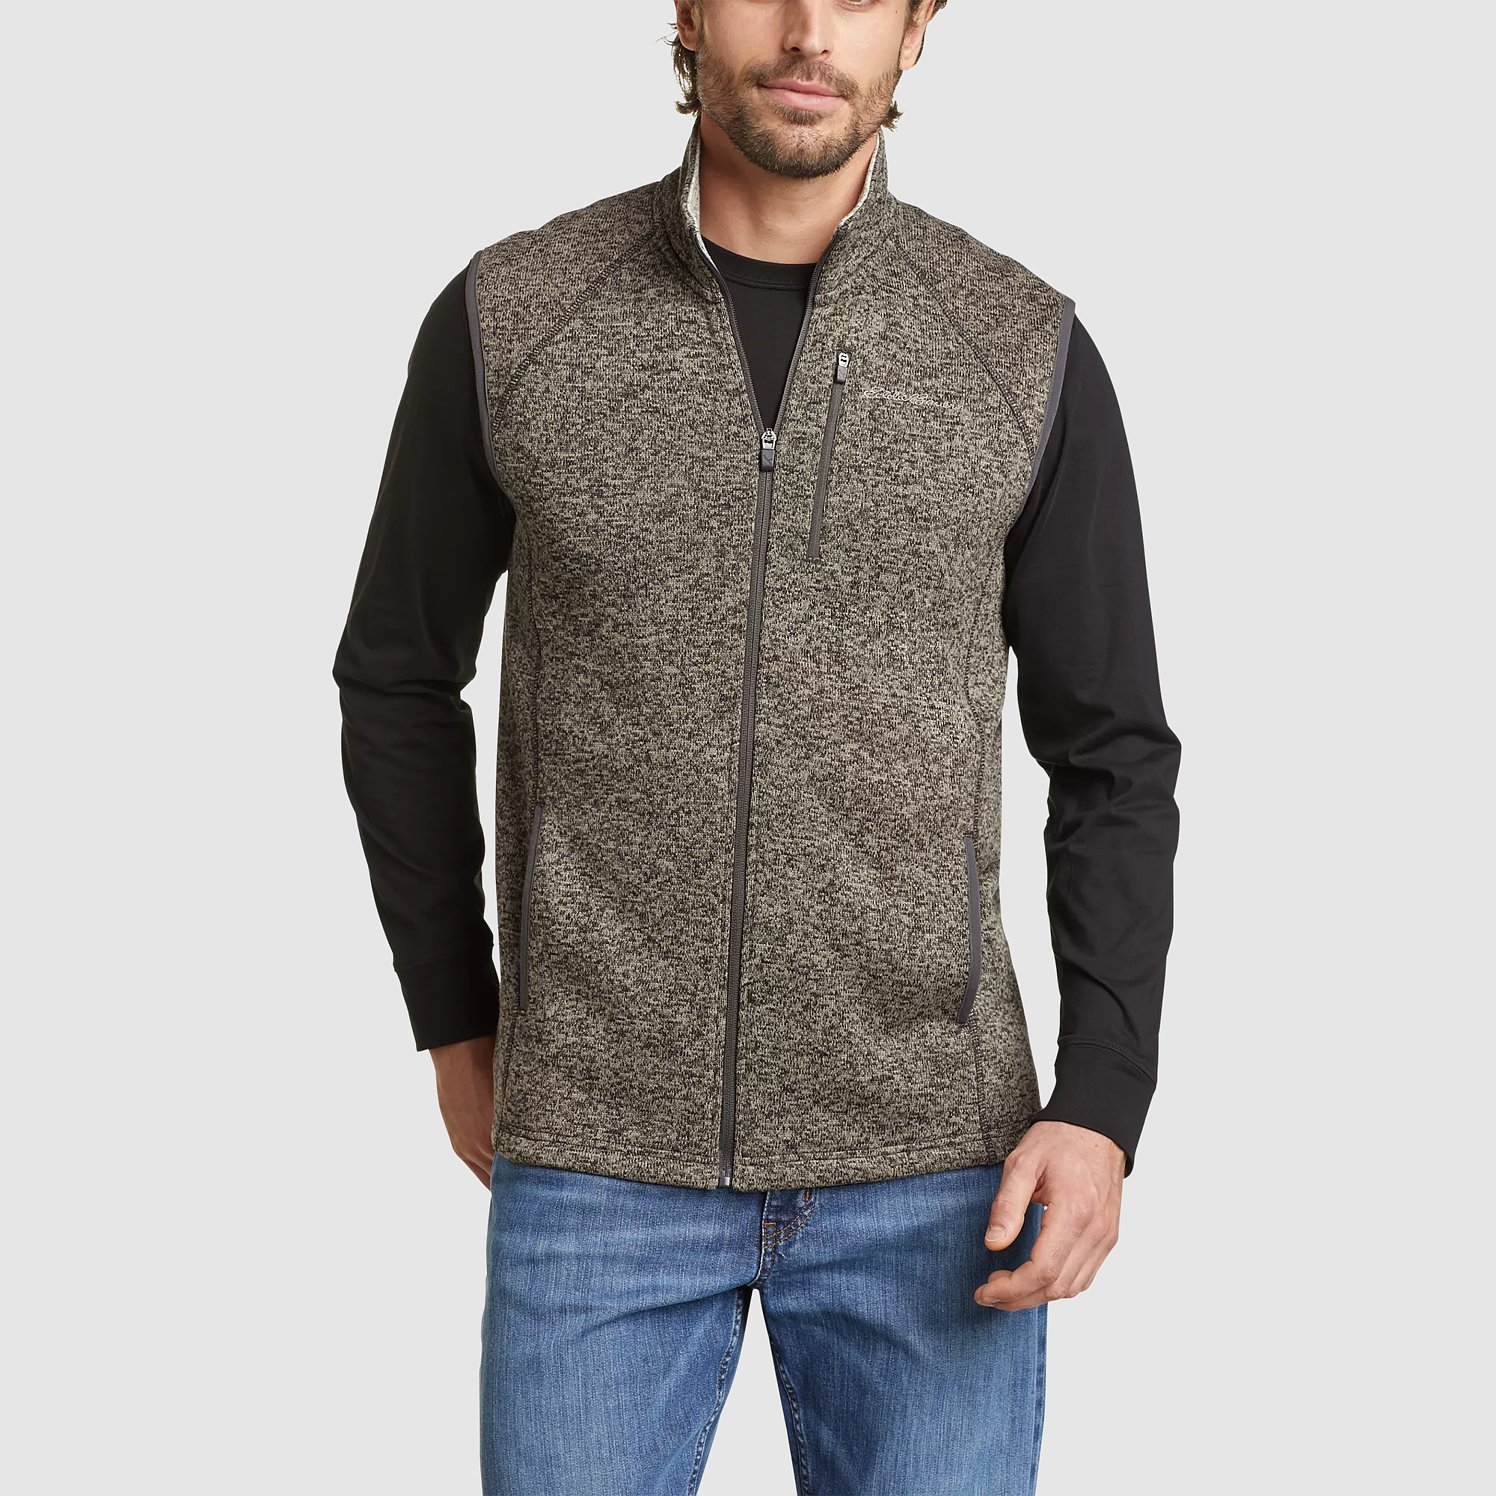 ThermoWorks x Eddie Bauer - Fleece Vest